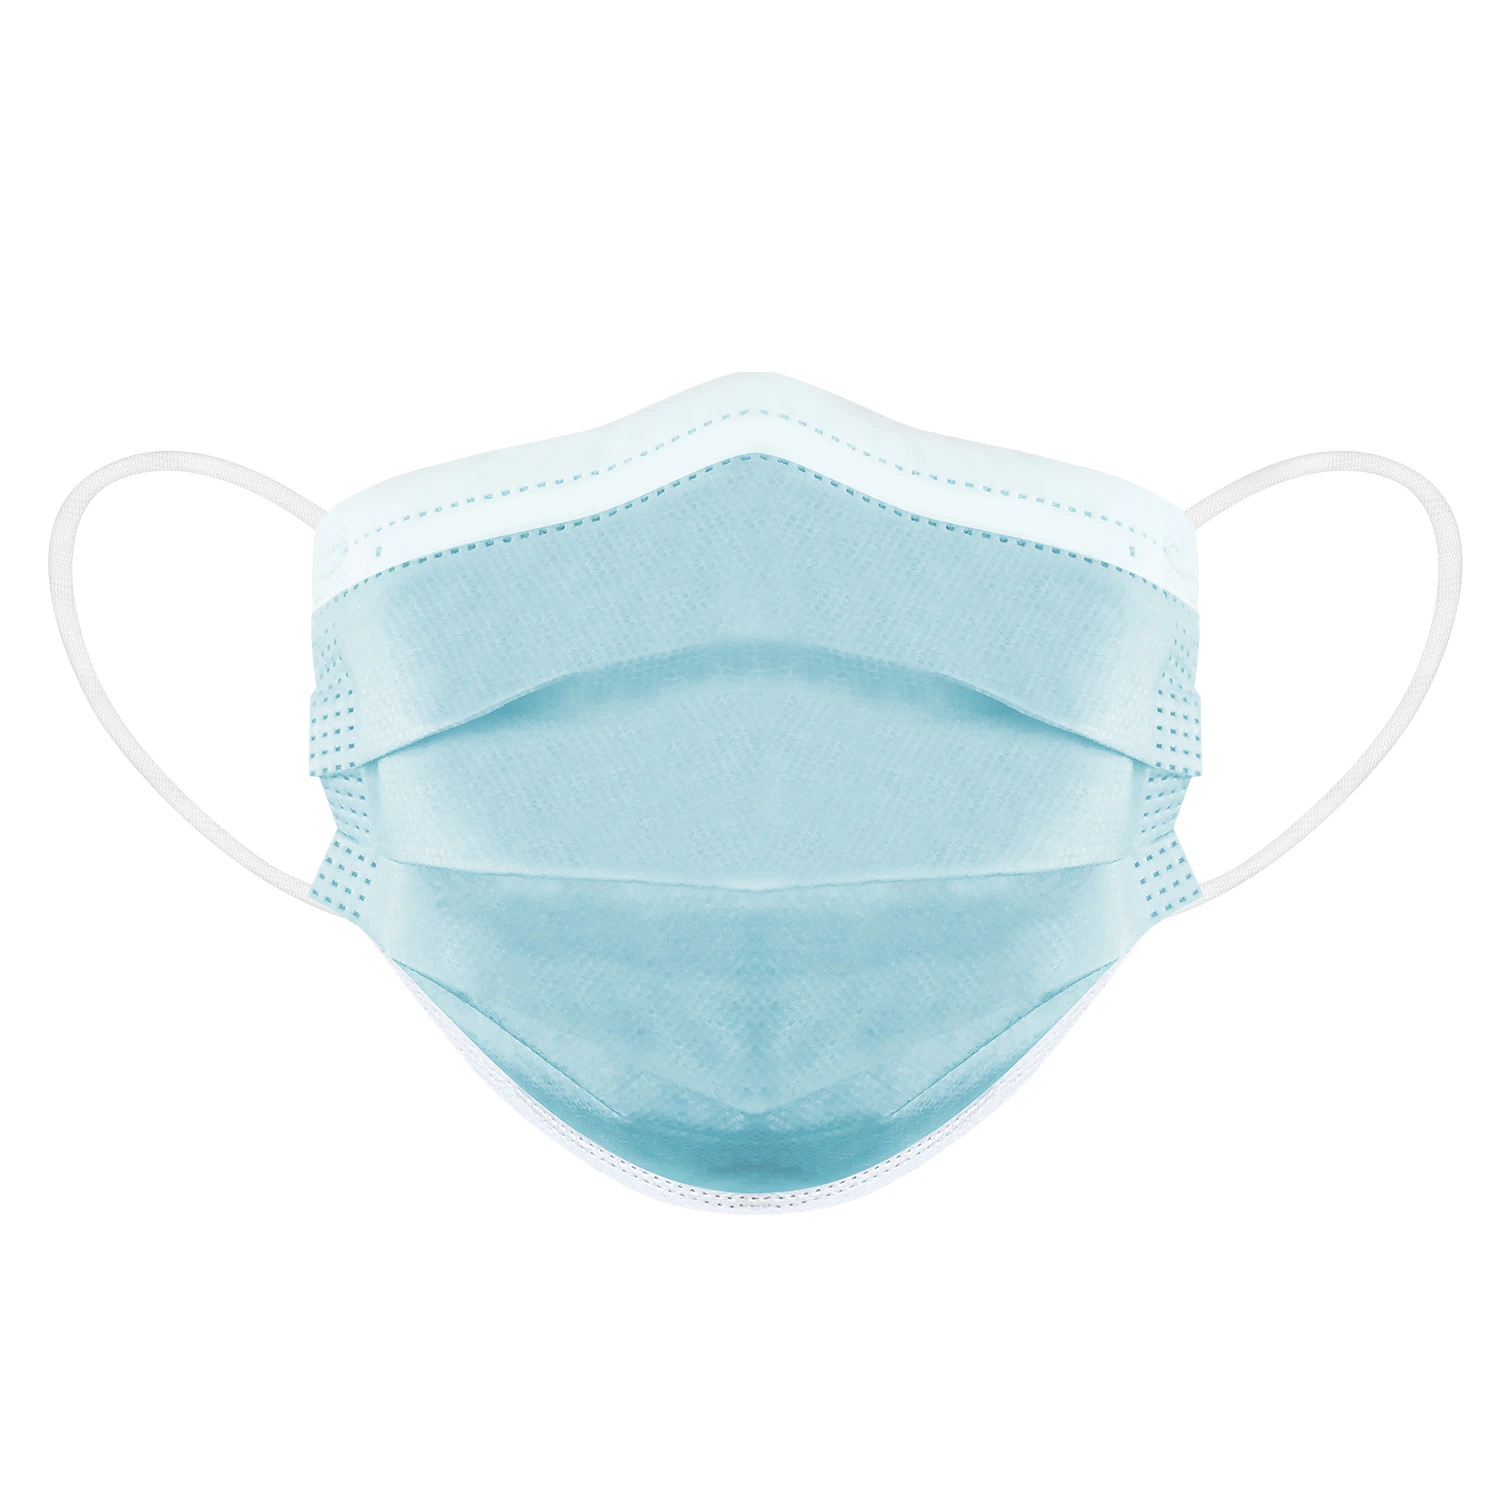 Hochwertige Medizinische Gesichtsmaske Nicht Gewobene Einweg-Krankenhaus Arzt Schutz Gesichtsmaske